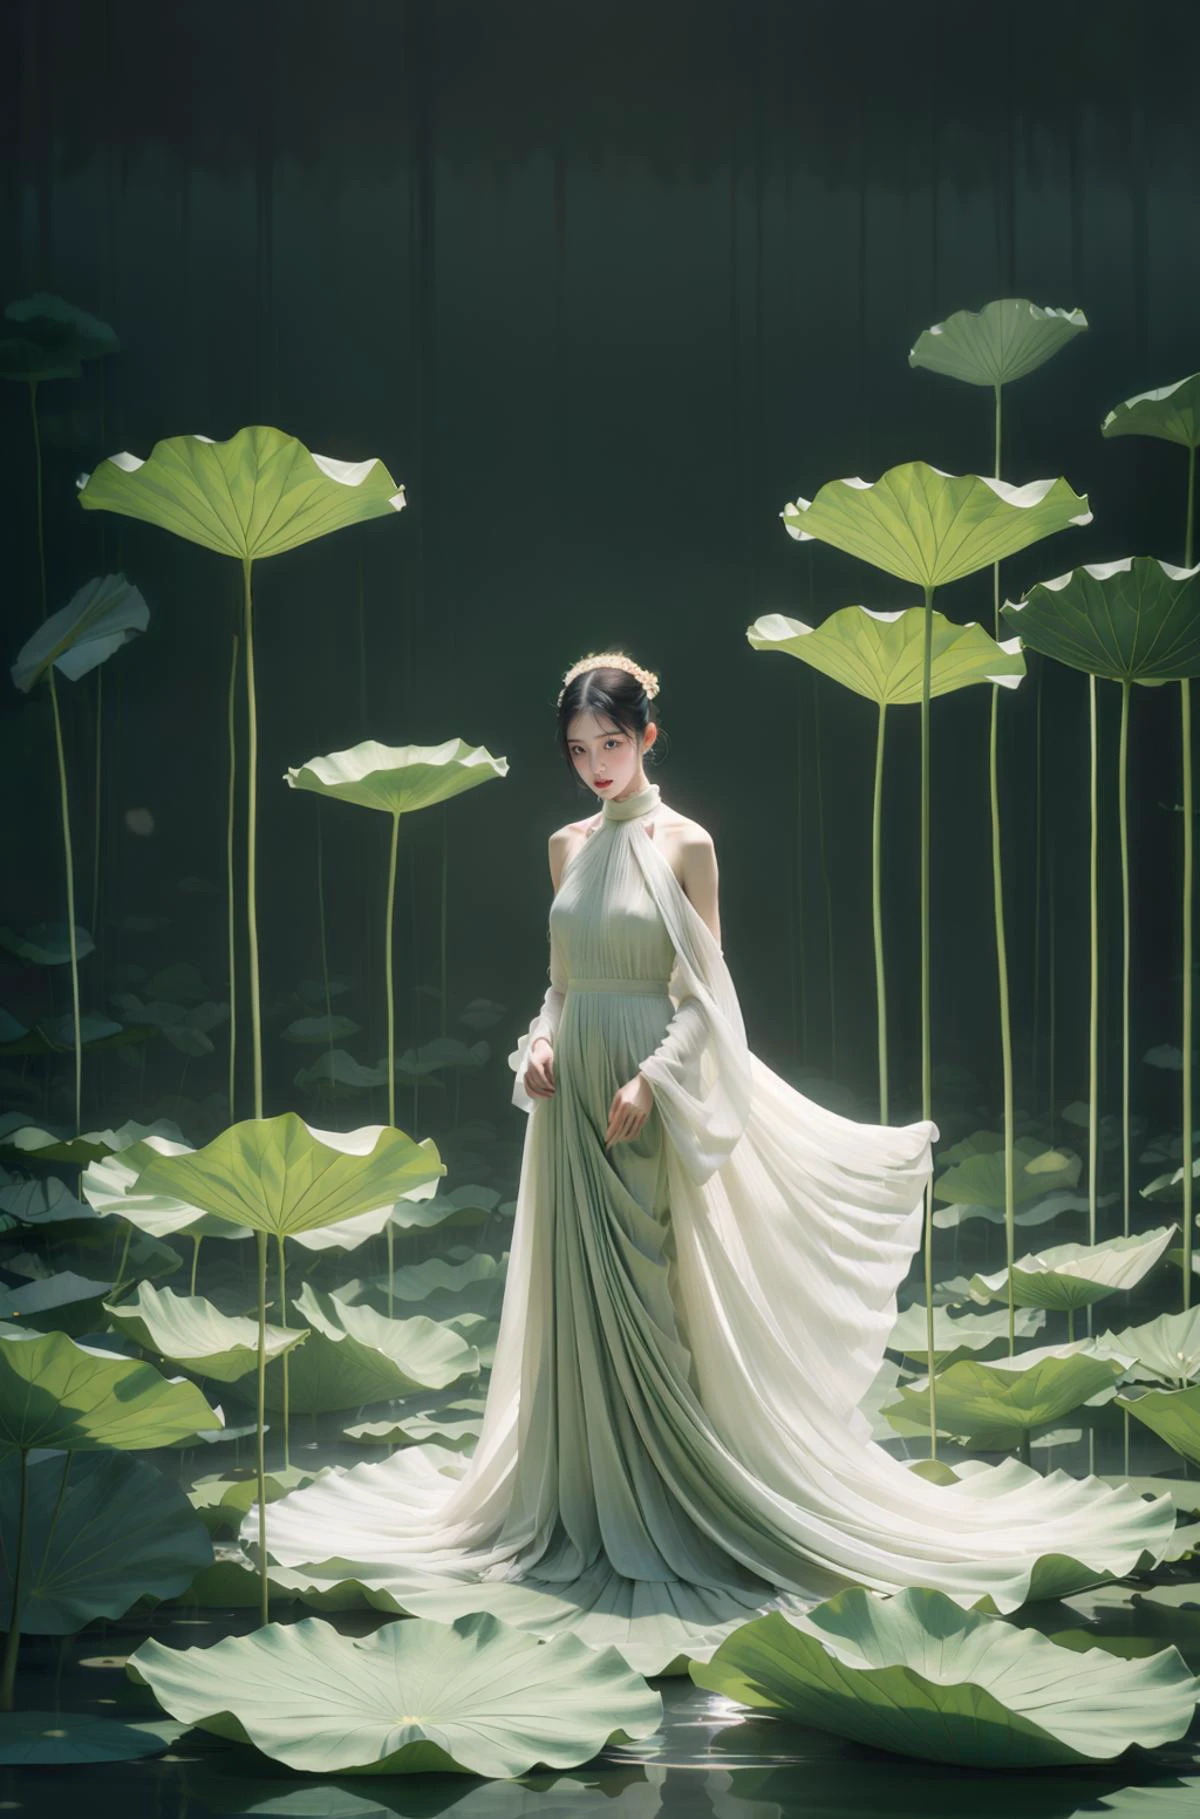 beste Qualität,realistisch,Meisterwerk,sehr detailliert,HDR,UHD,8K,1 Mädchen,grünes Thema,weißes Kleid,lotus,Blume,Wasser